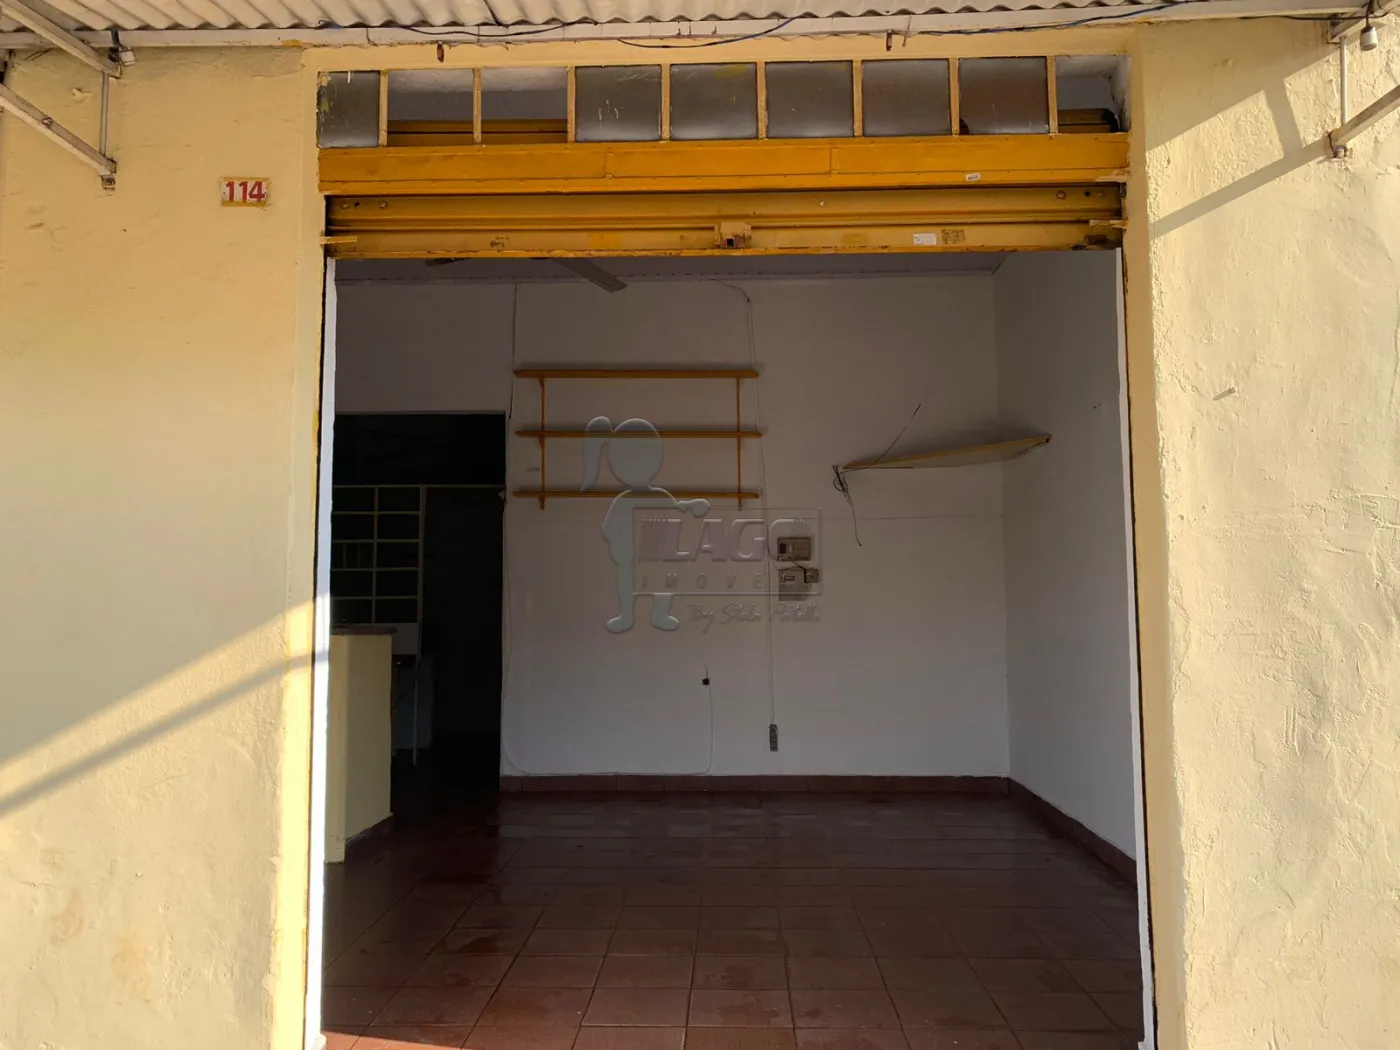 Comprar Casa / Padrão em Ribeirão Preto R$ 200.000,00 - Foto 3